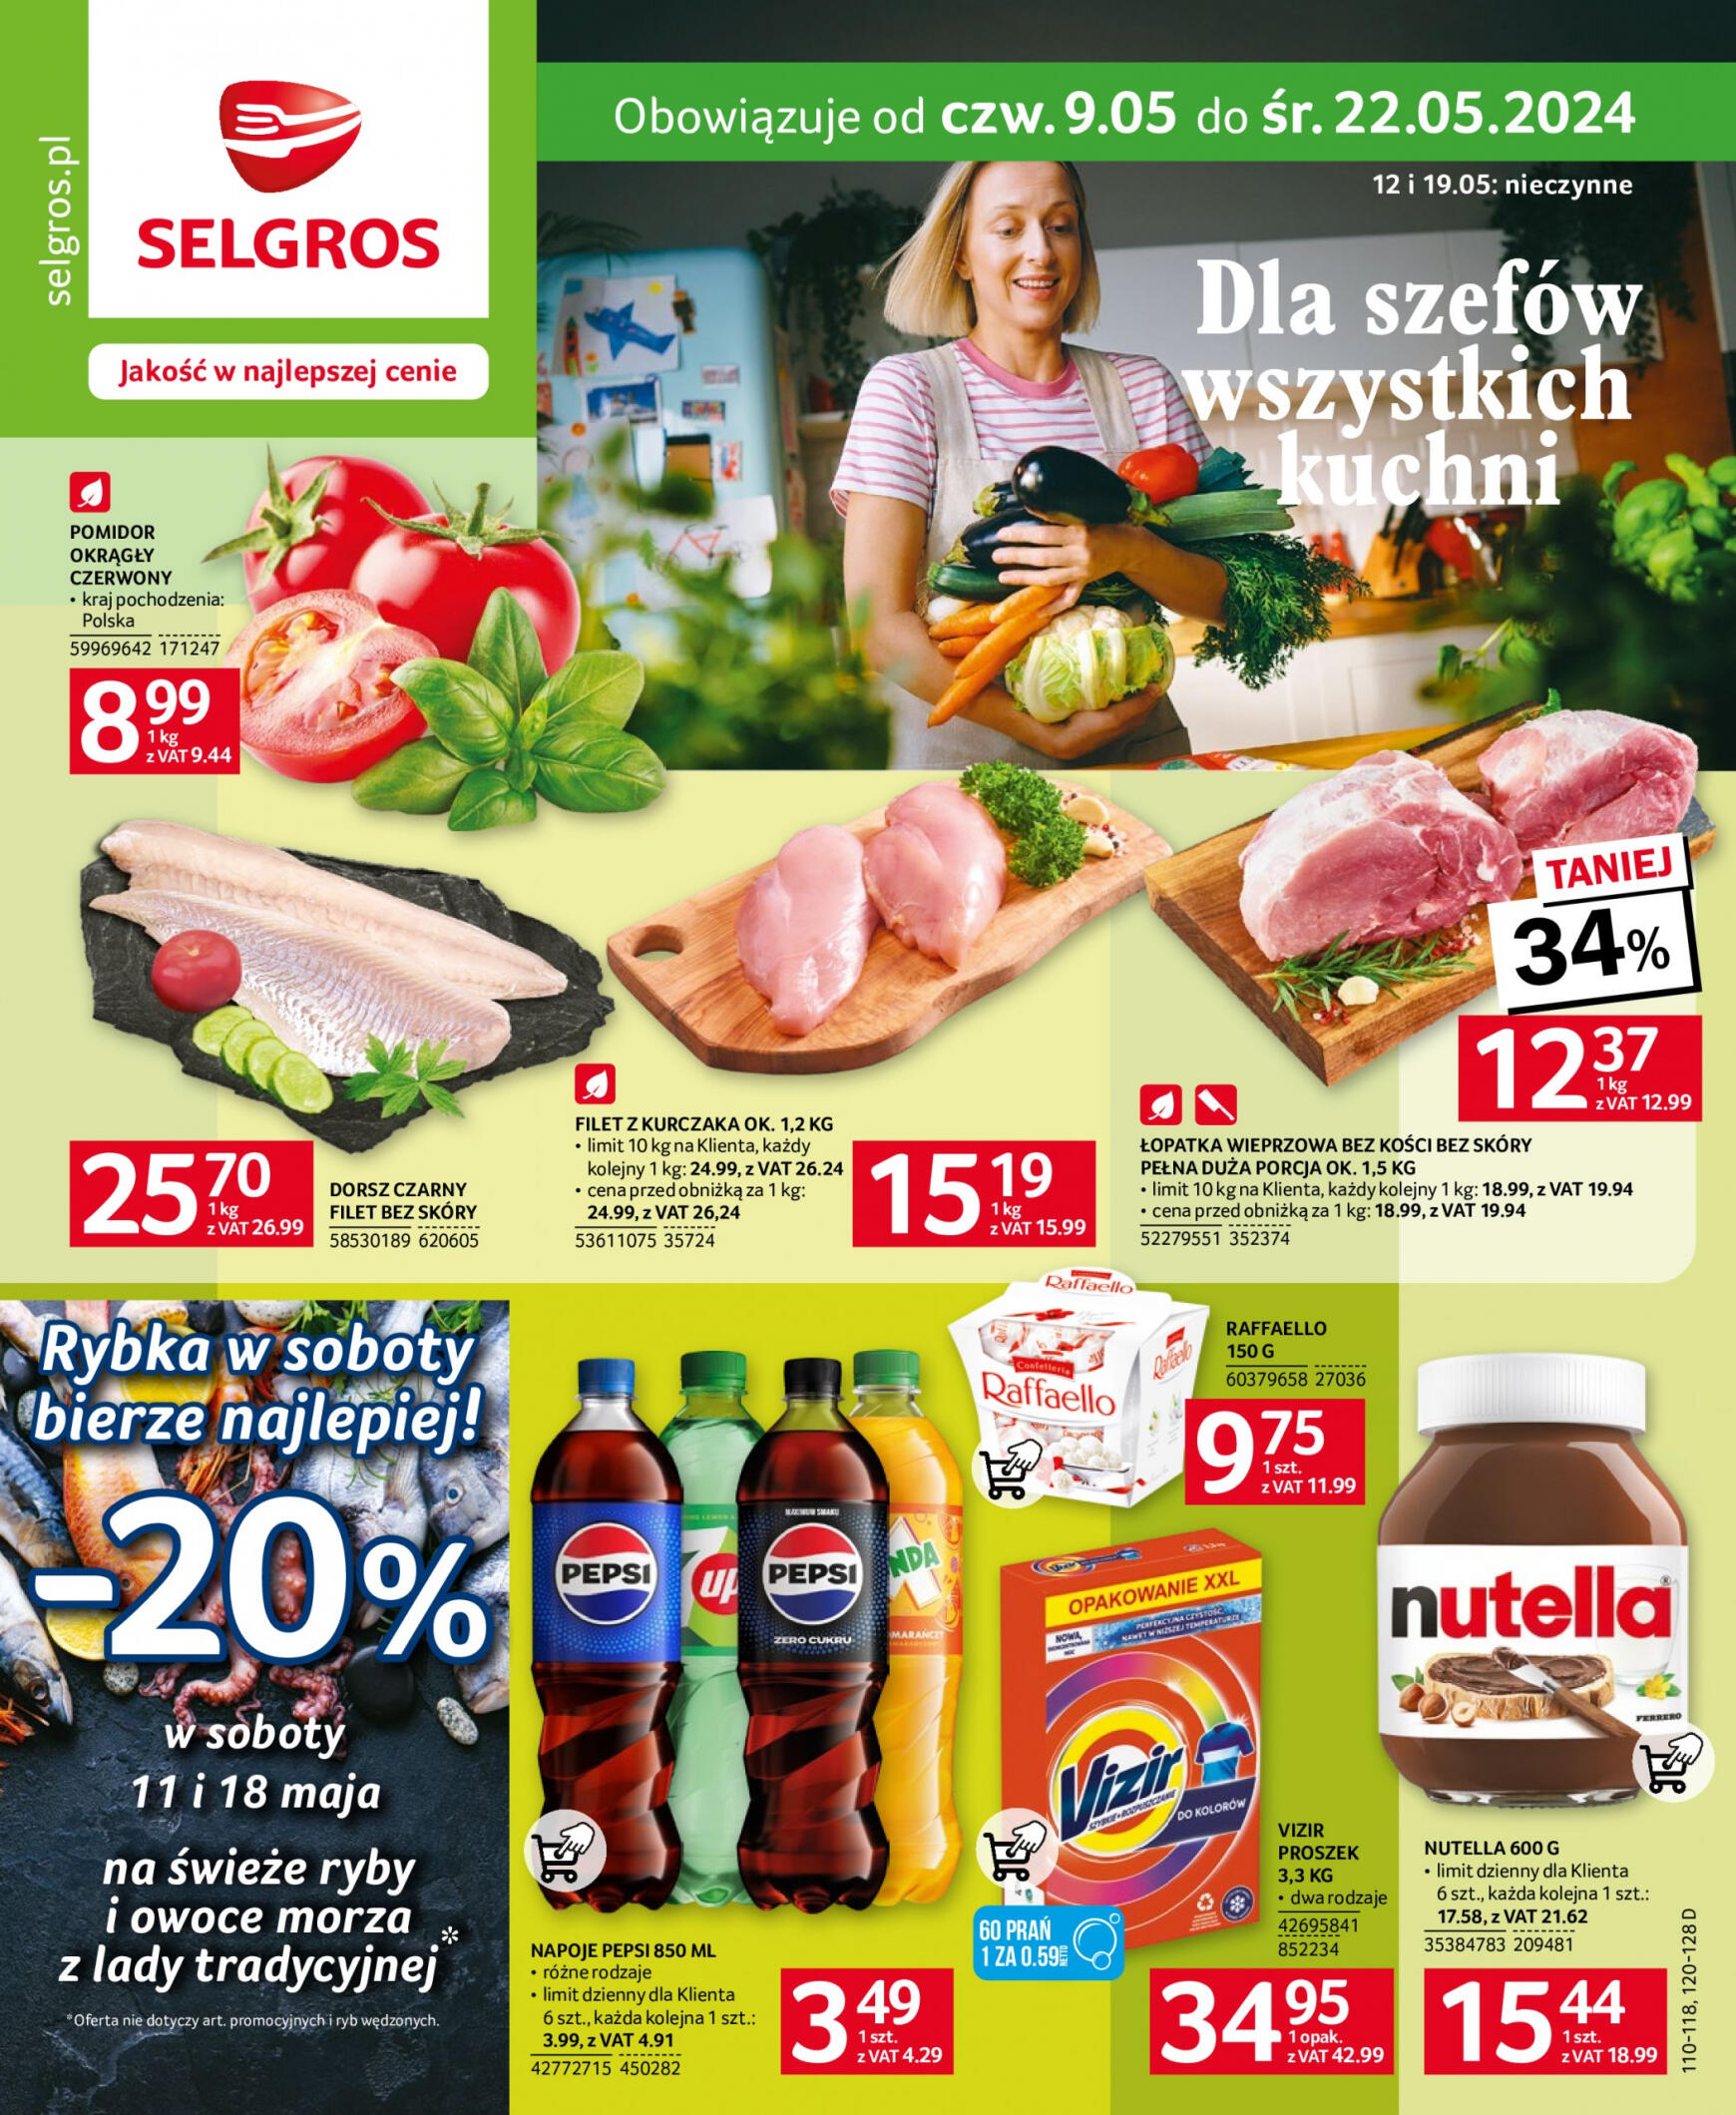 selgros - Selgros cash&carry gazetka aktualna ważna od 09.05. - 22.05.